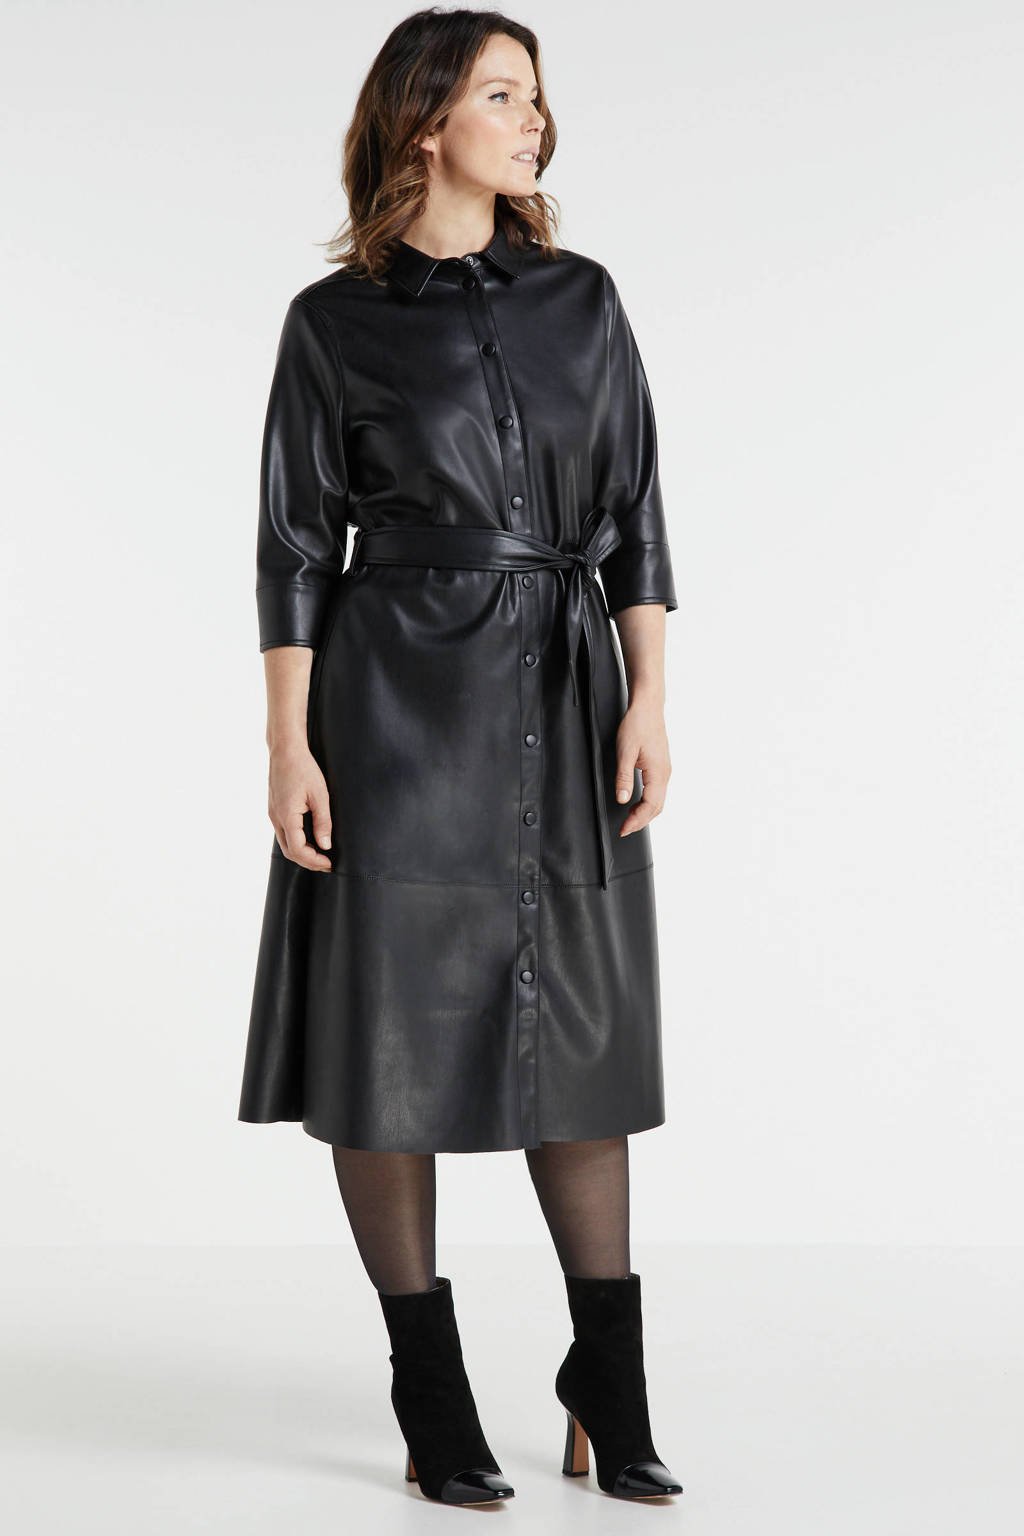 Betsy Trotwood Aankondiging geestelijke Miljuschka by Wehkamp imitatieleren jurk zwart | wehkamp